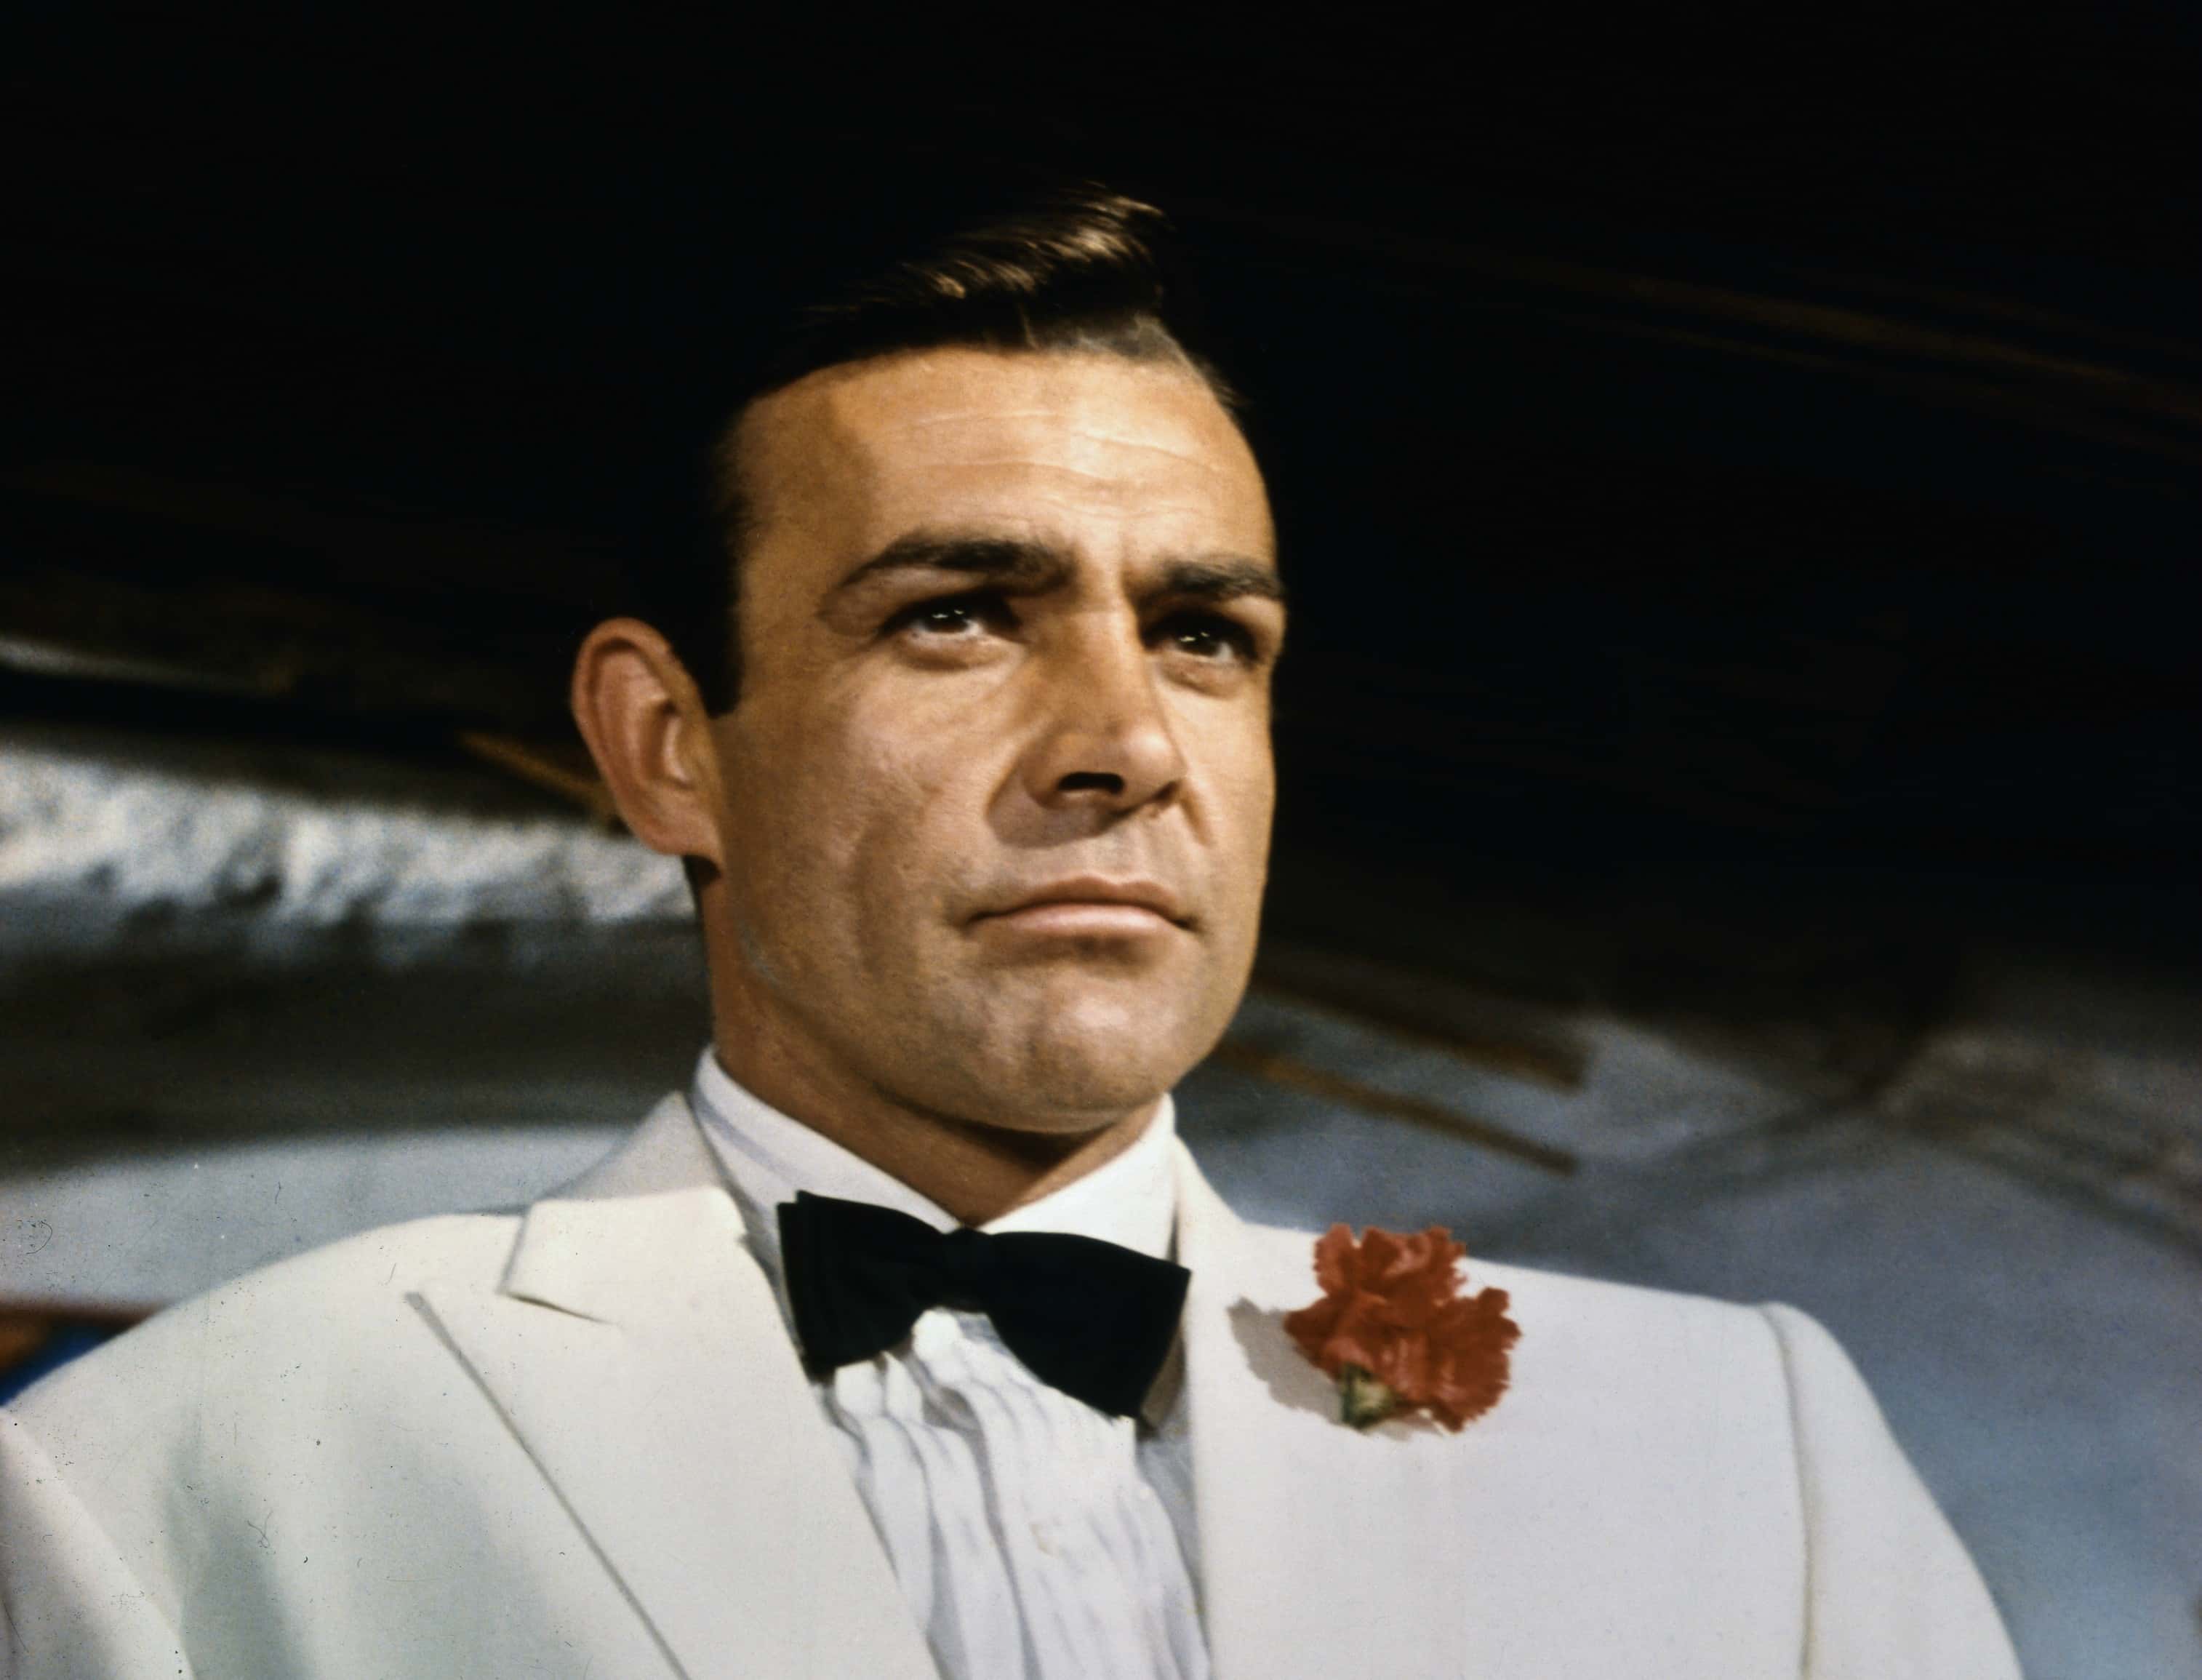 Sean Connery as James Bond.